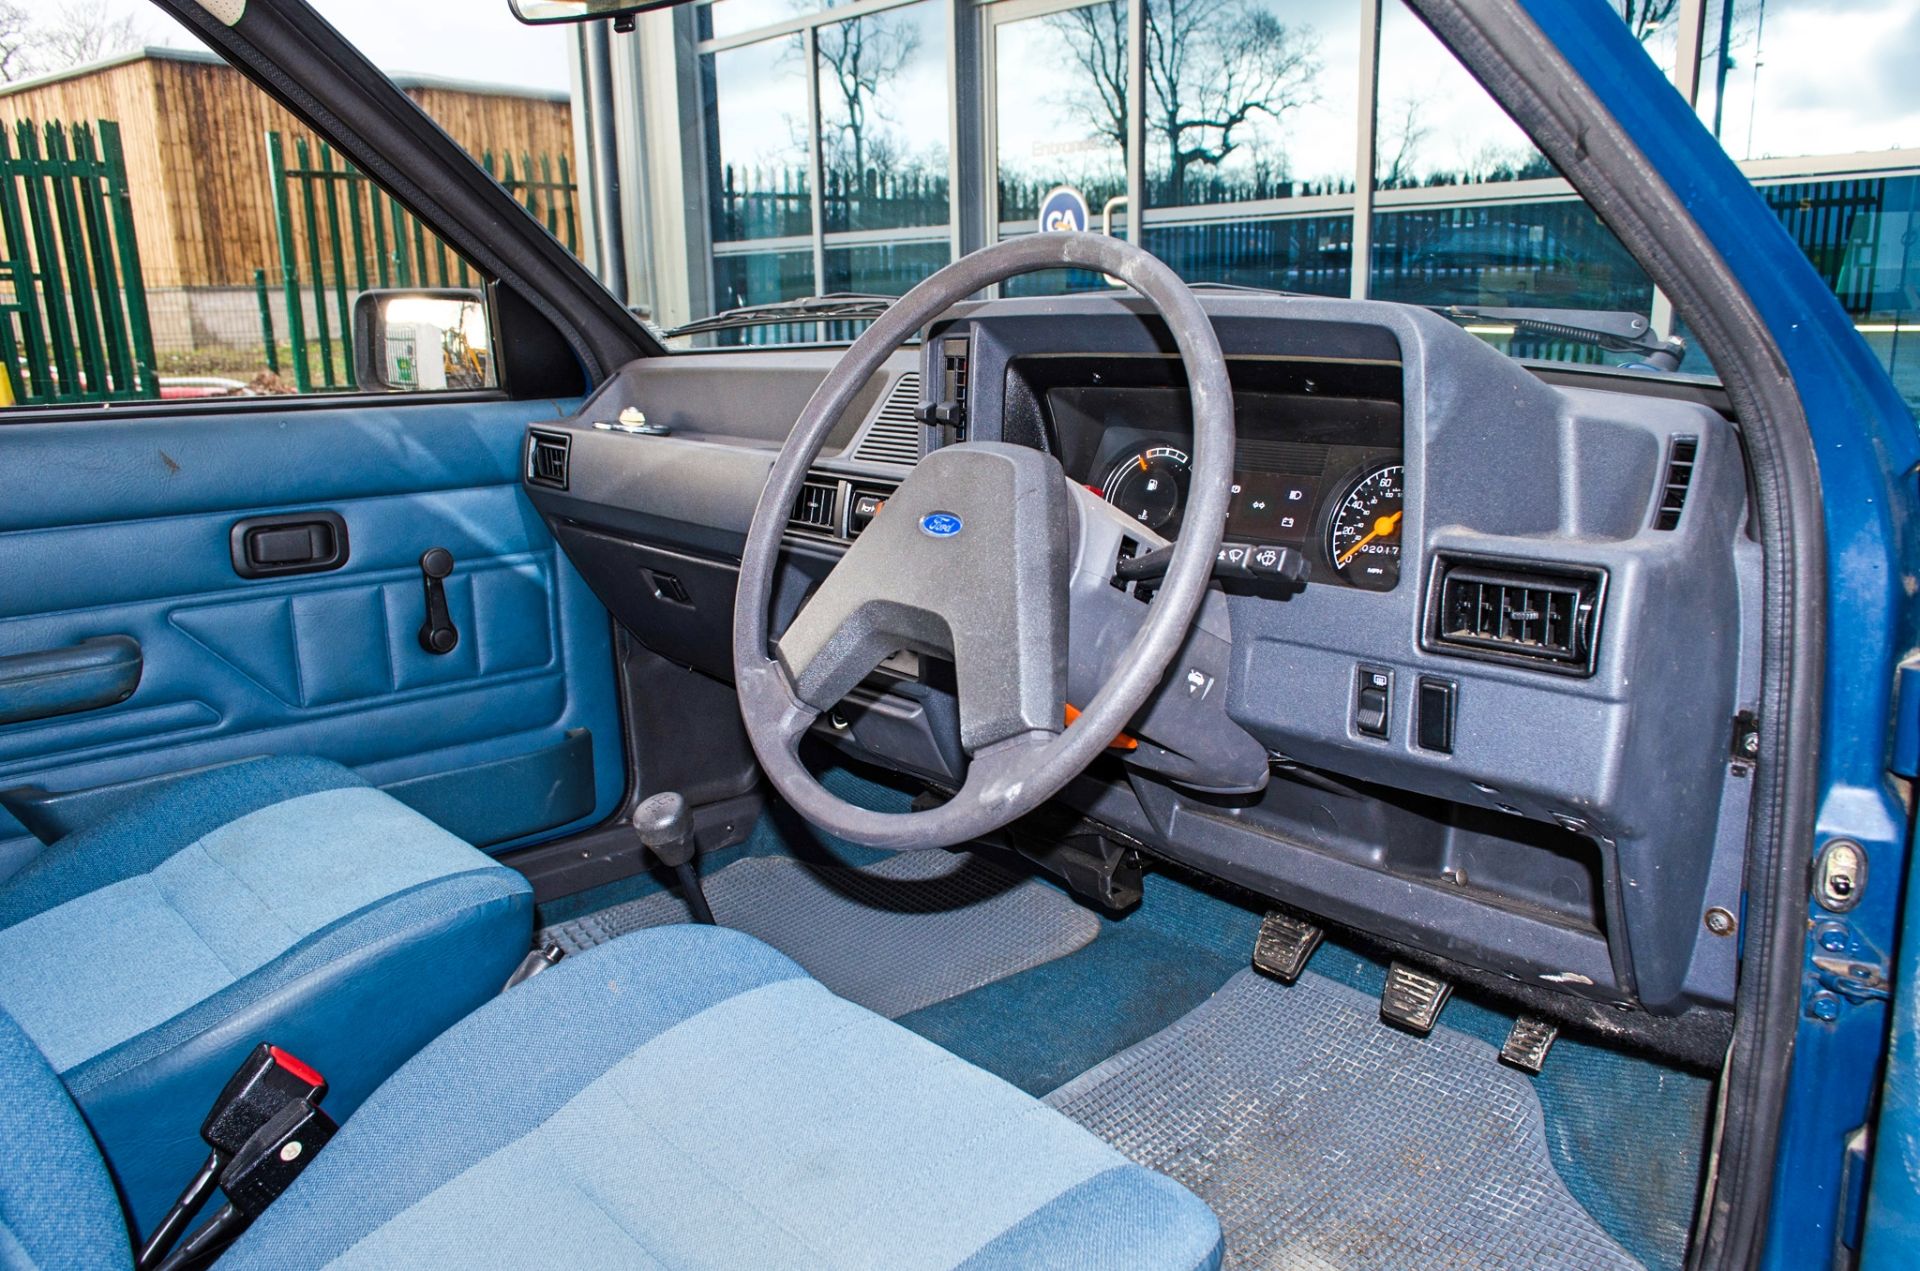 1982 Ford Escort 1.1 L 1100 cc 5 door hatchback 0nly 2017 miles - Bild 26 aus 50